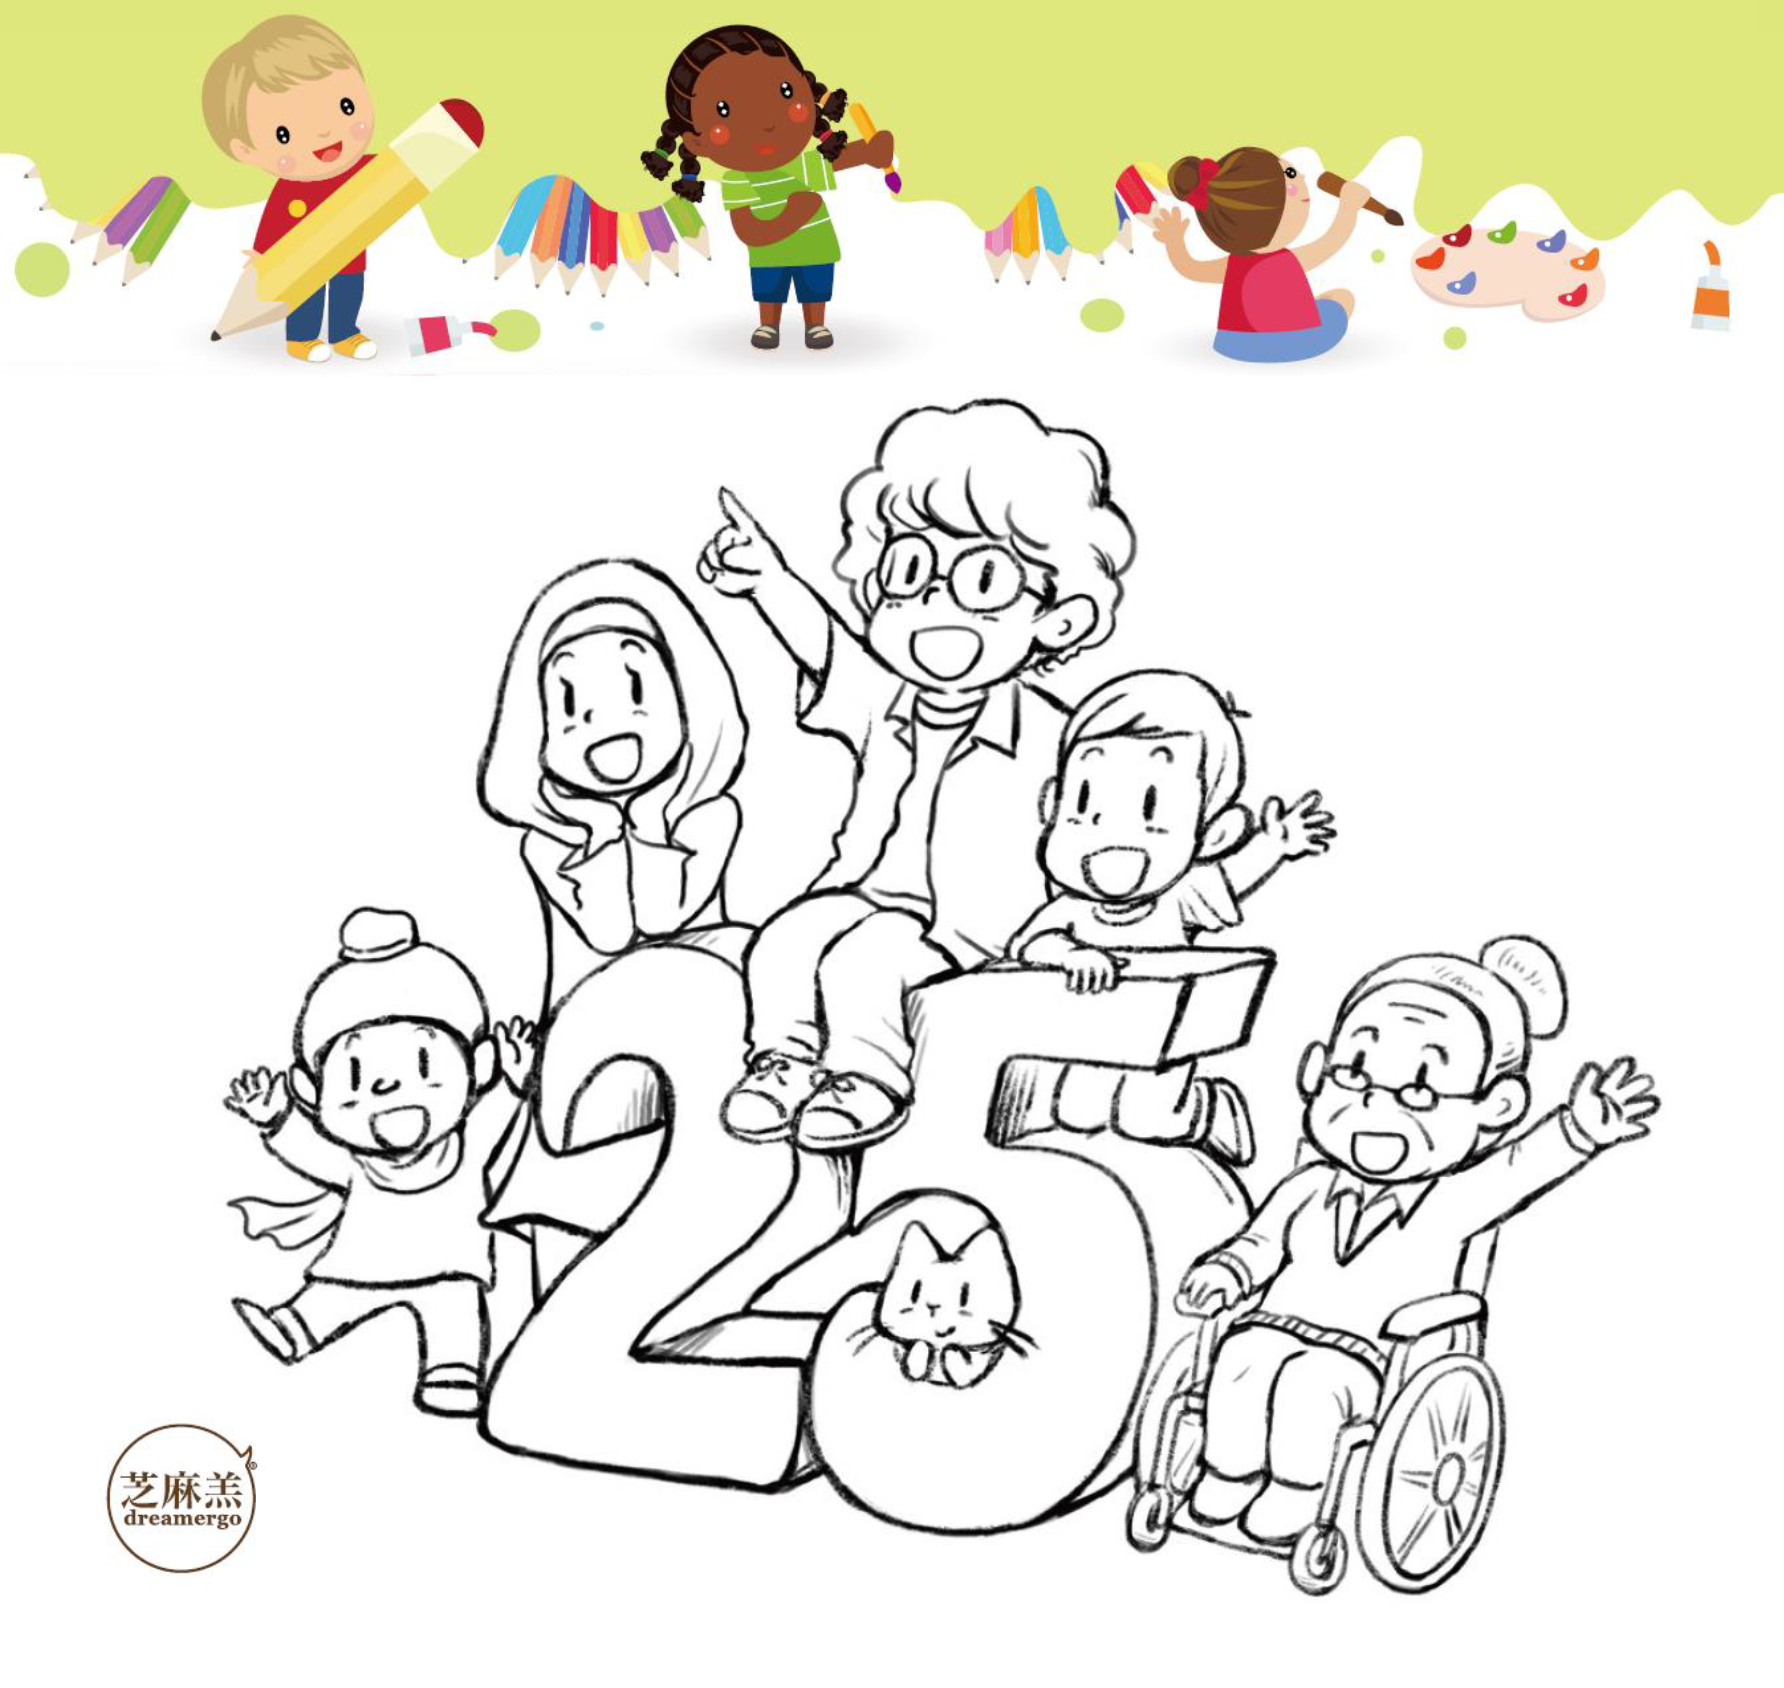 插畫家芝麻羔繪畫的黑白插圖，右起：坐在輪椅上的年長女性、小男孩、中年女性、戴著頭巾的女孩和男孩。